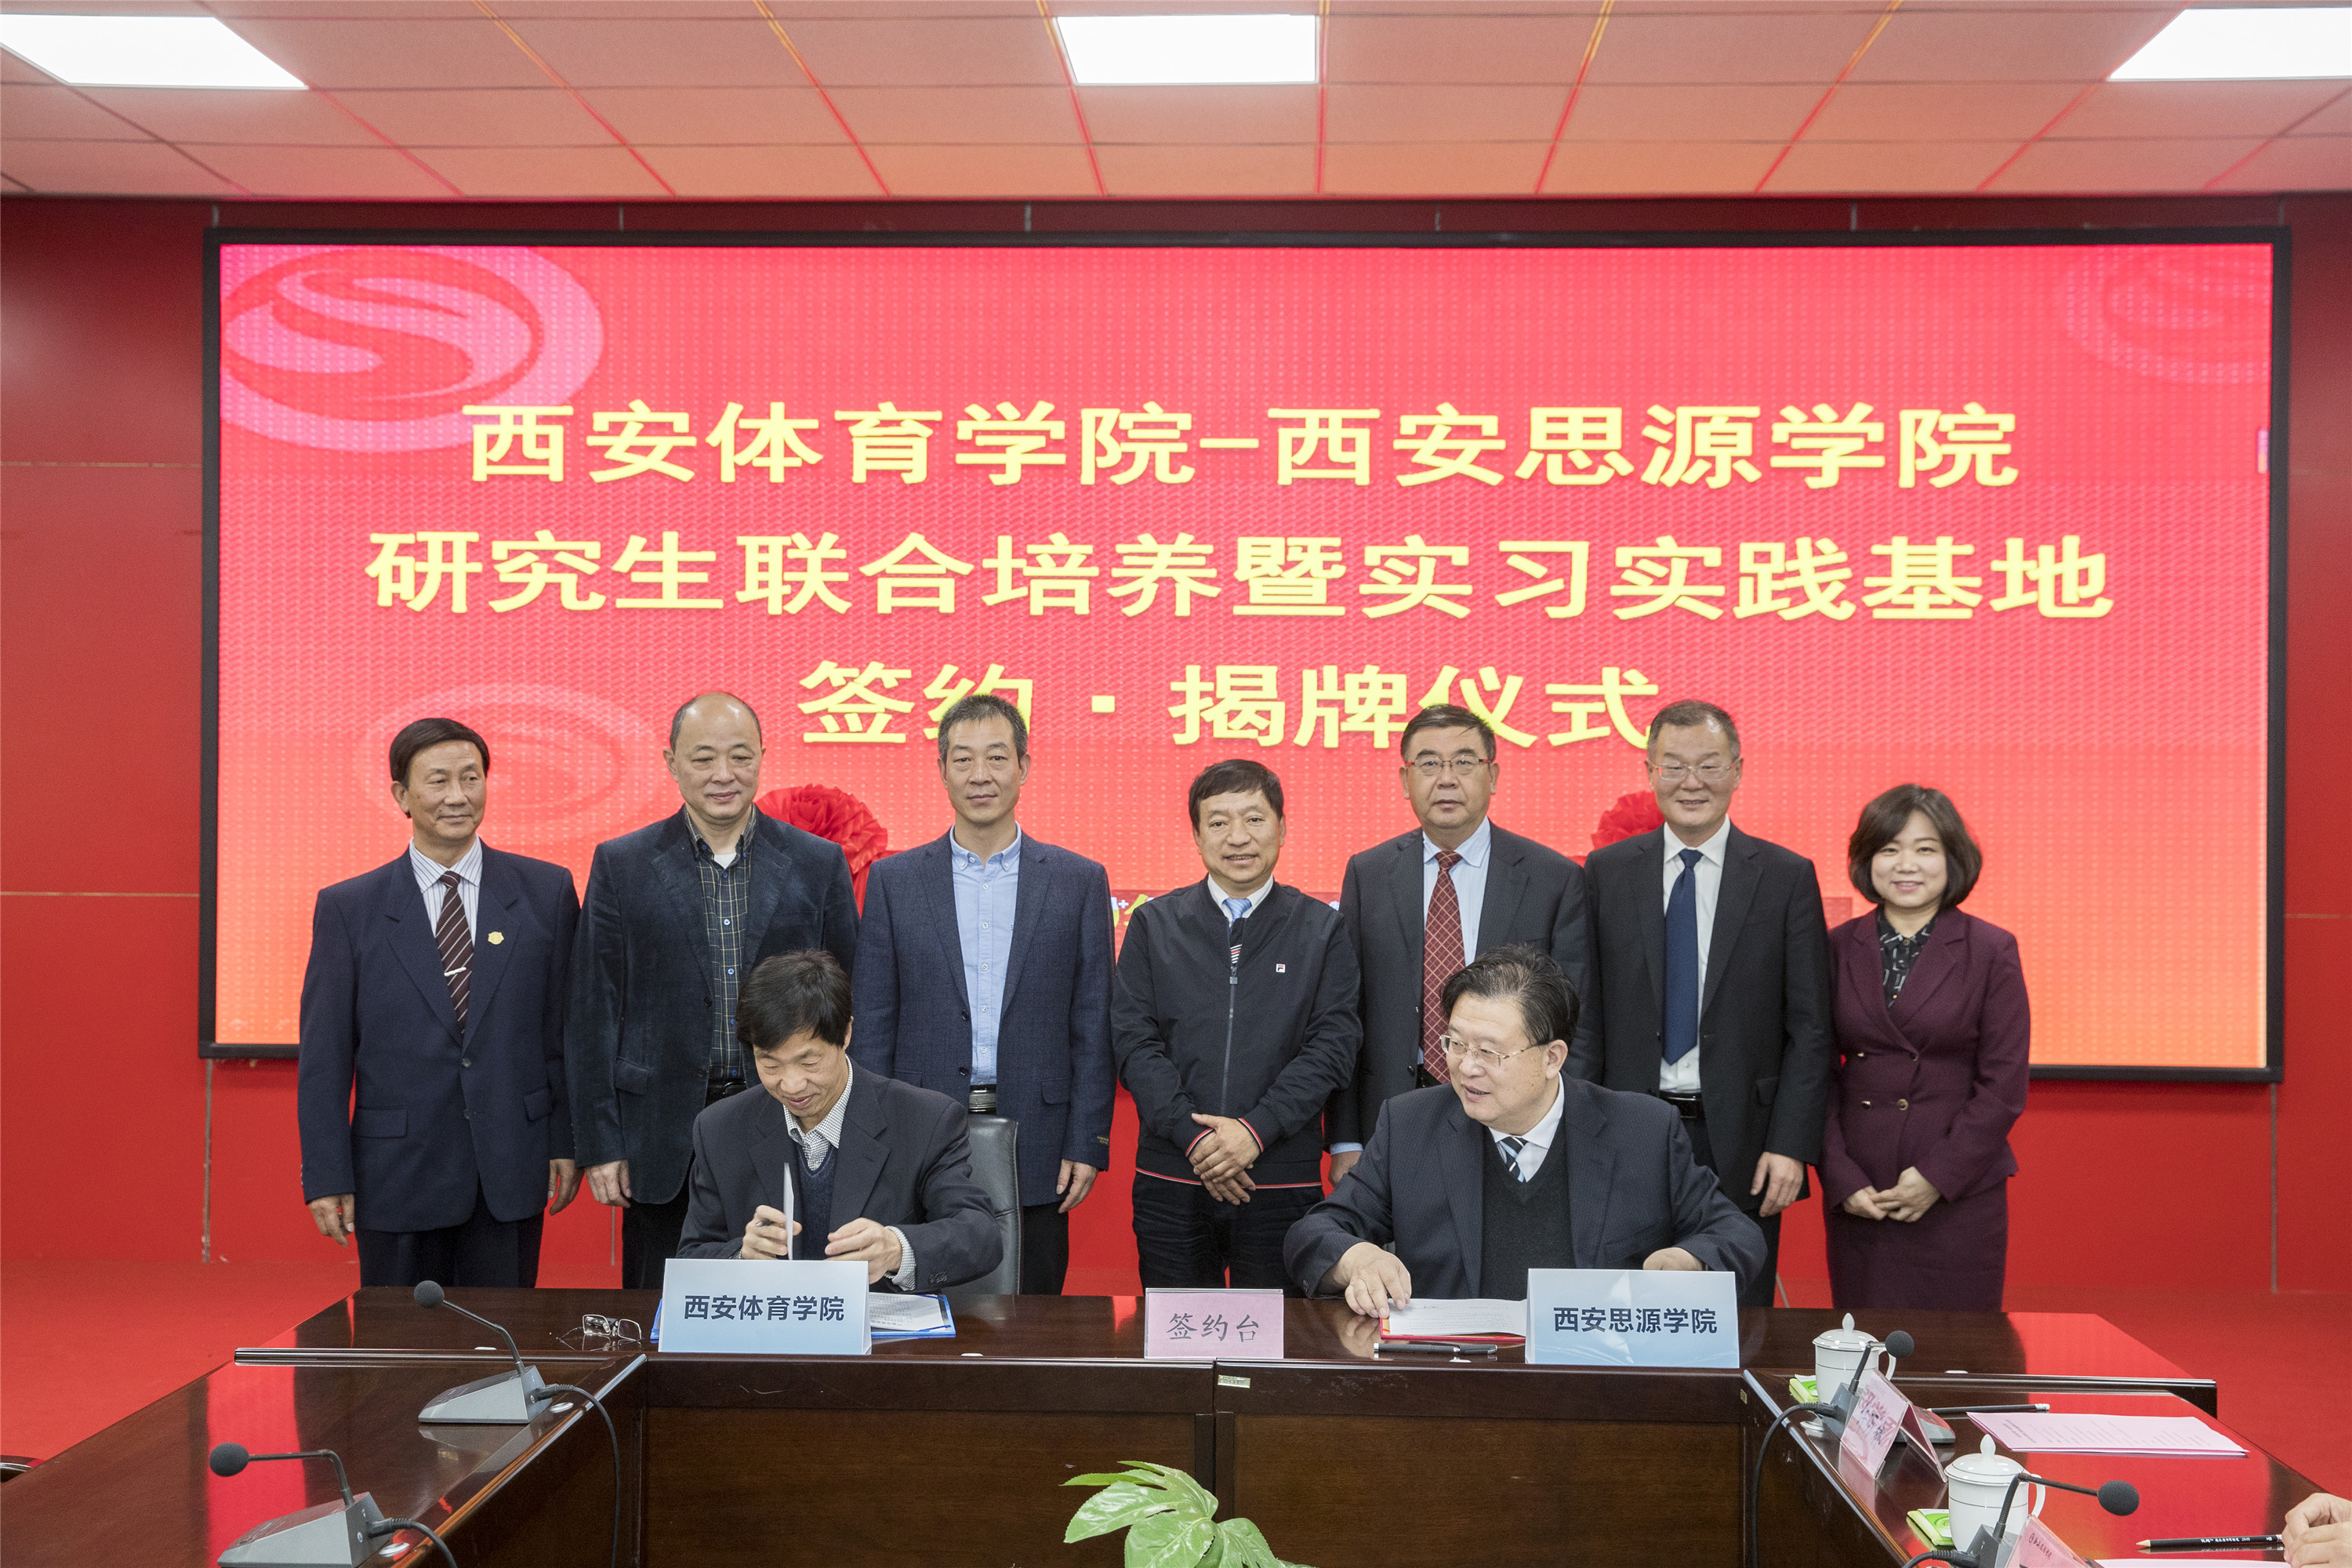 6、我校校长安宇、西安体育学院副校长刘新民代表双方院校签署合作协议